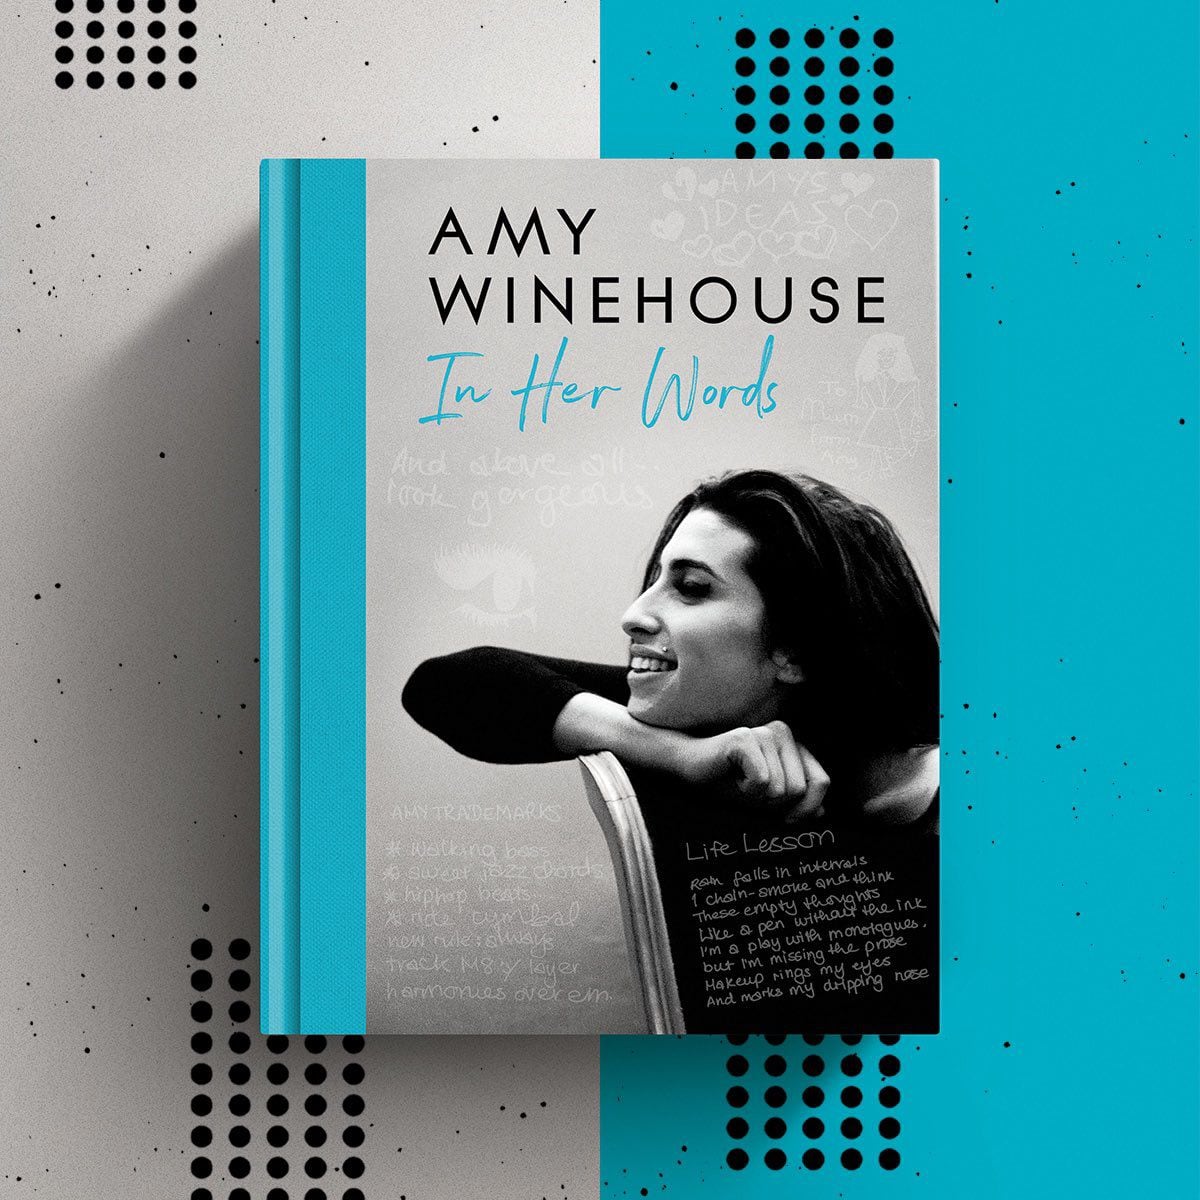 "In Her Words" llegará a las librerías británicas el 31 de agosto de este año. Contará con 288 páginas a color llenas de letras y escritos que Amy Winehouse escribió en vida. (Twitter/ @amywinehouse)